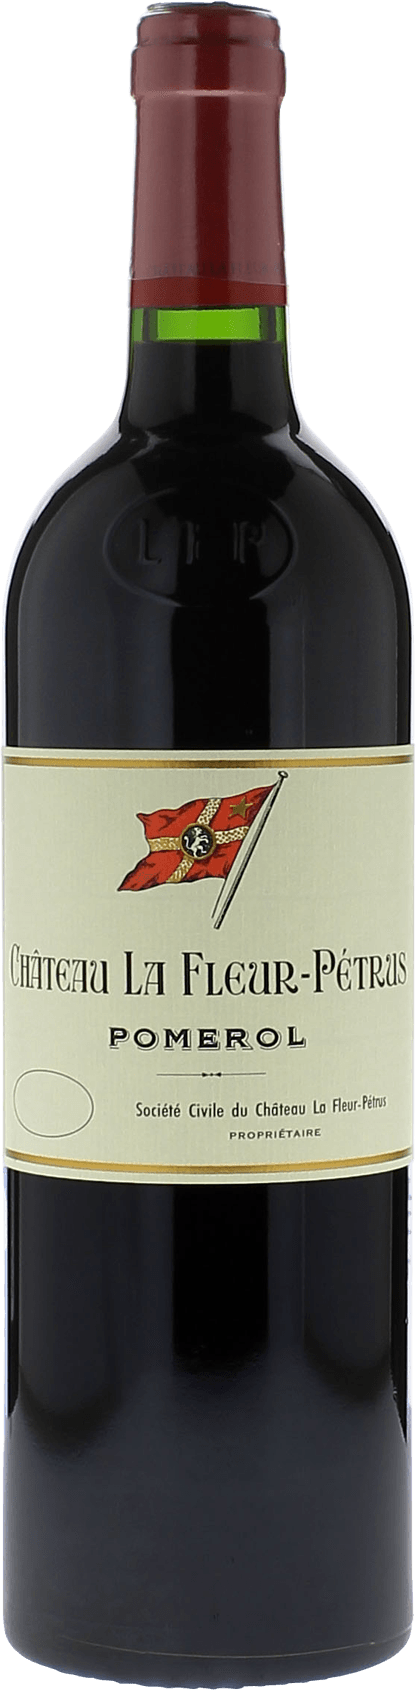 La fleur petrus 1993  Pomerol, Bordeaux rouge